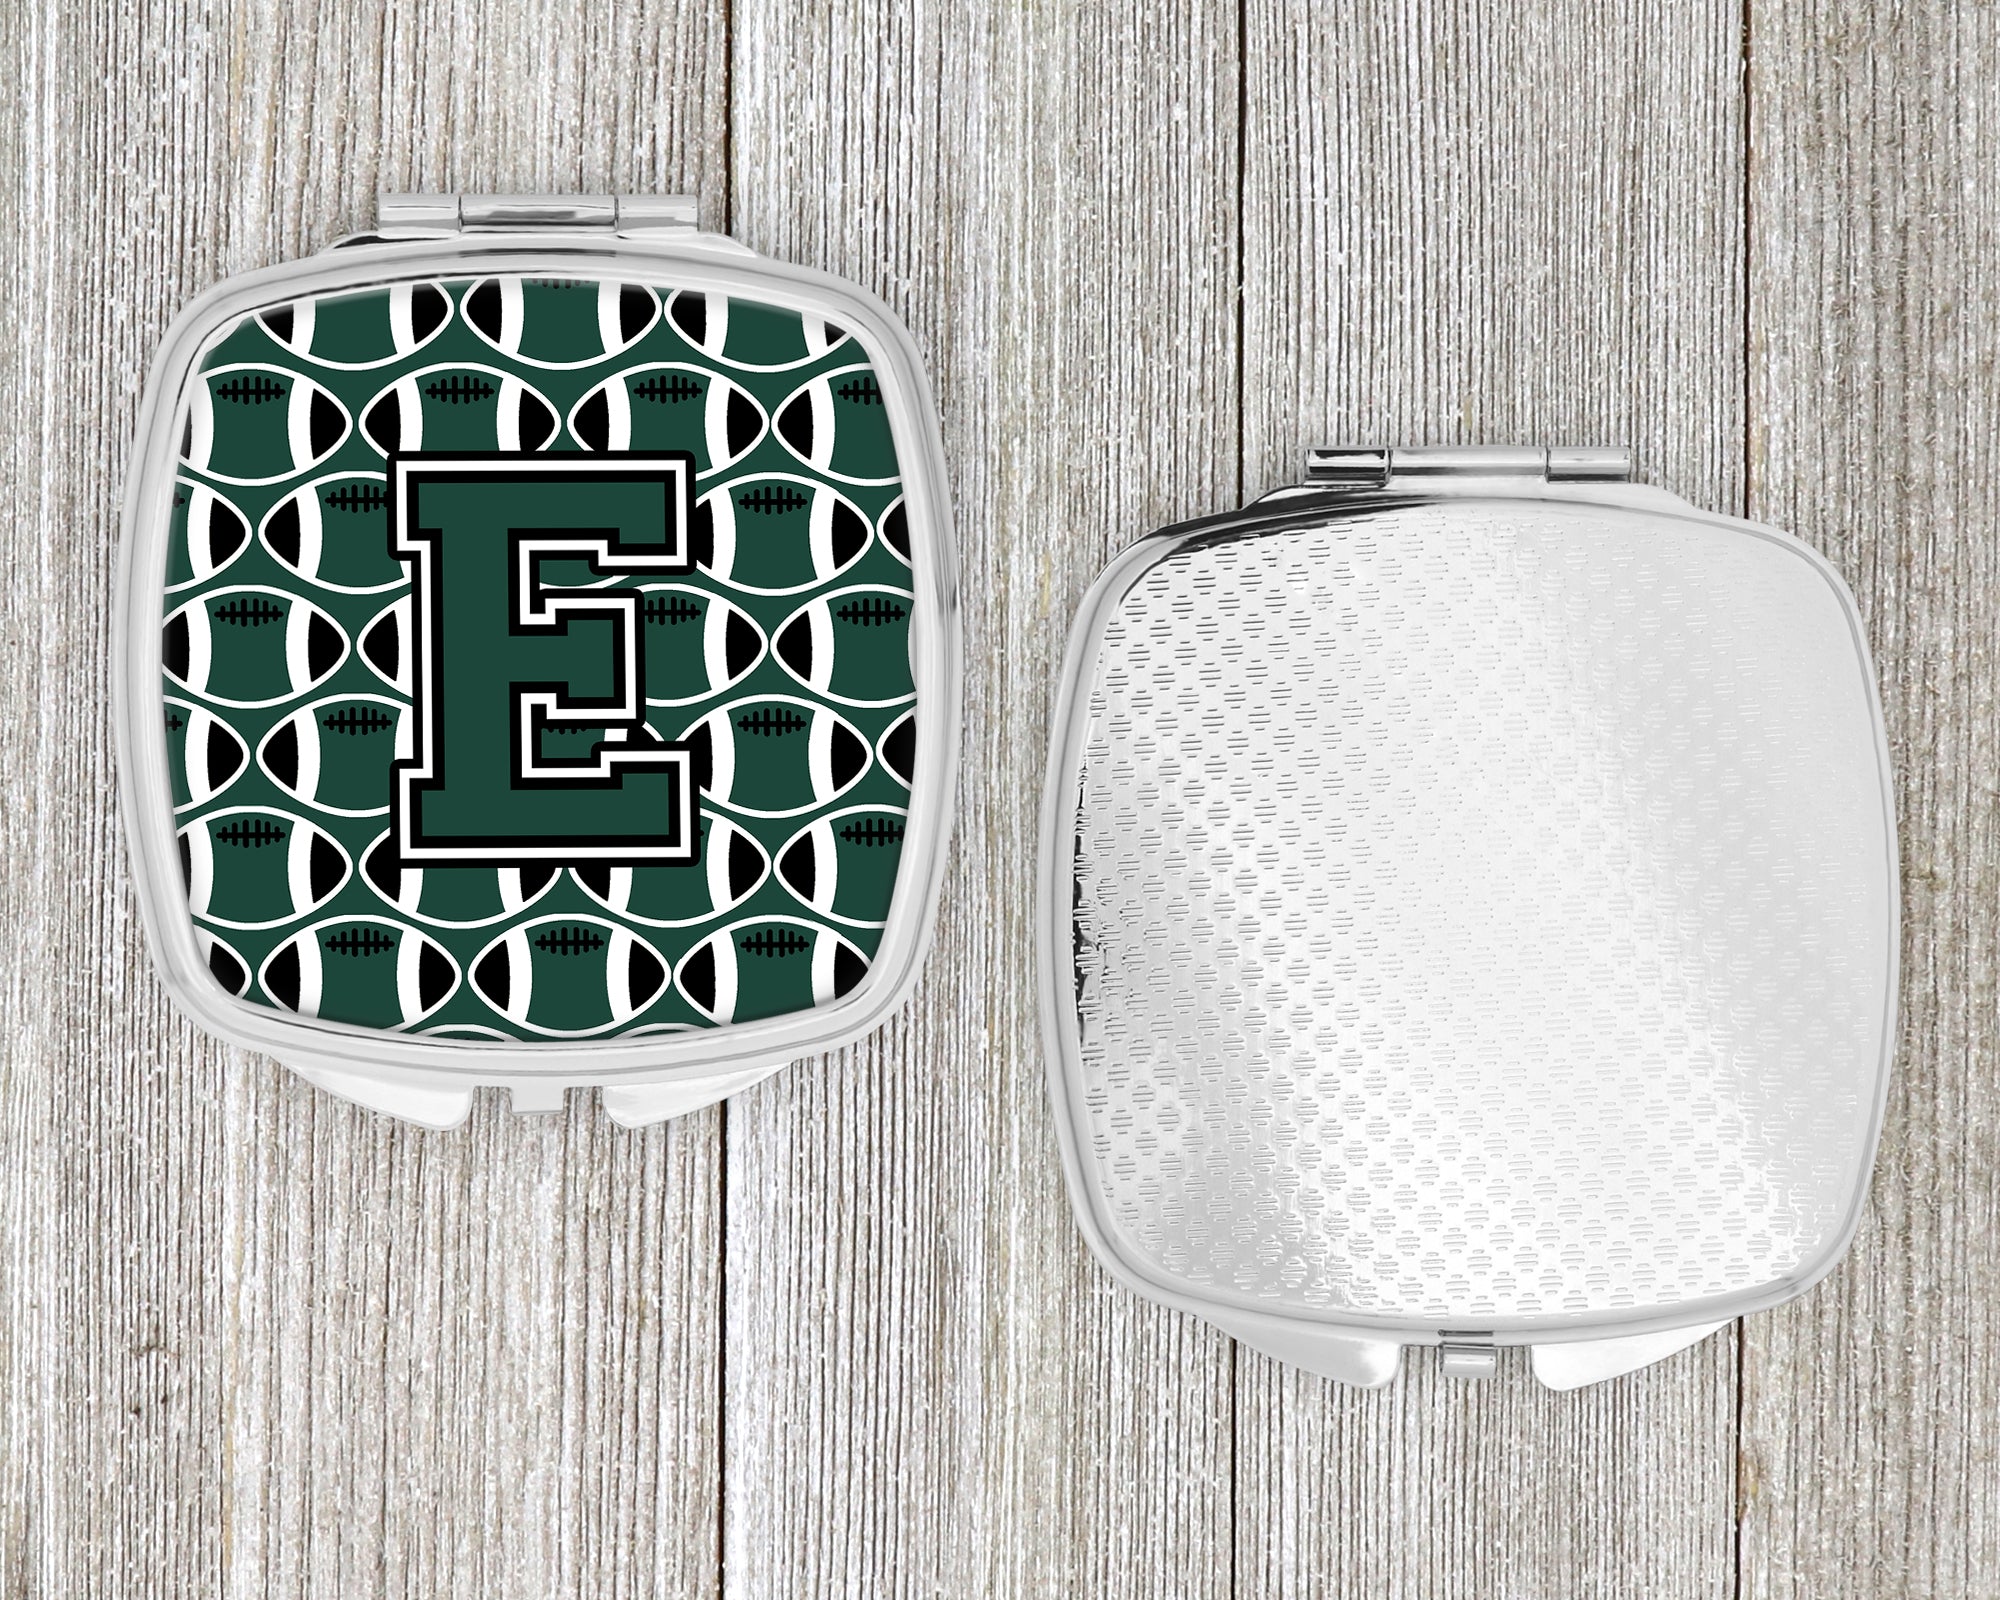 Letter E Football Green and White Compact Mirror CJ1071-ESCM  the-store.com.